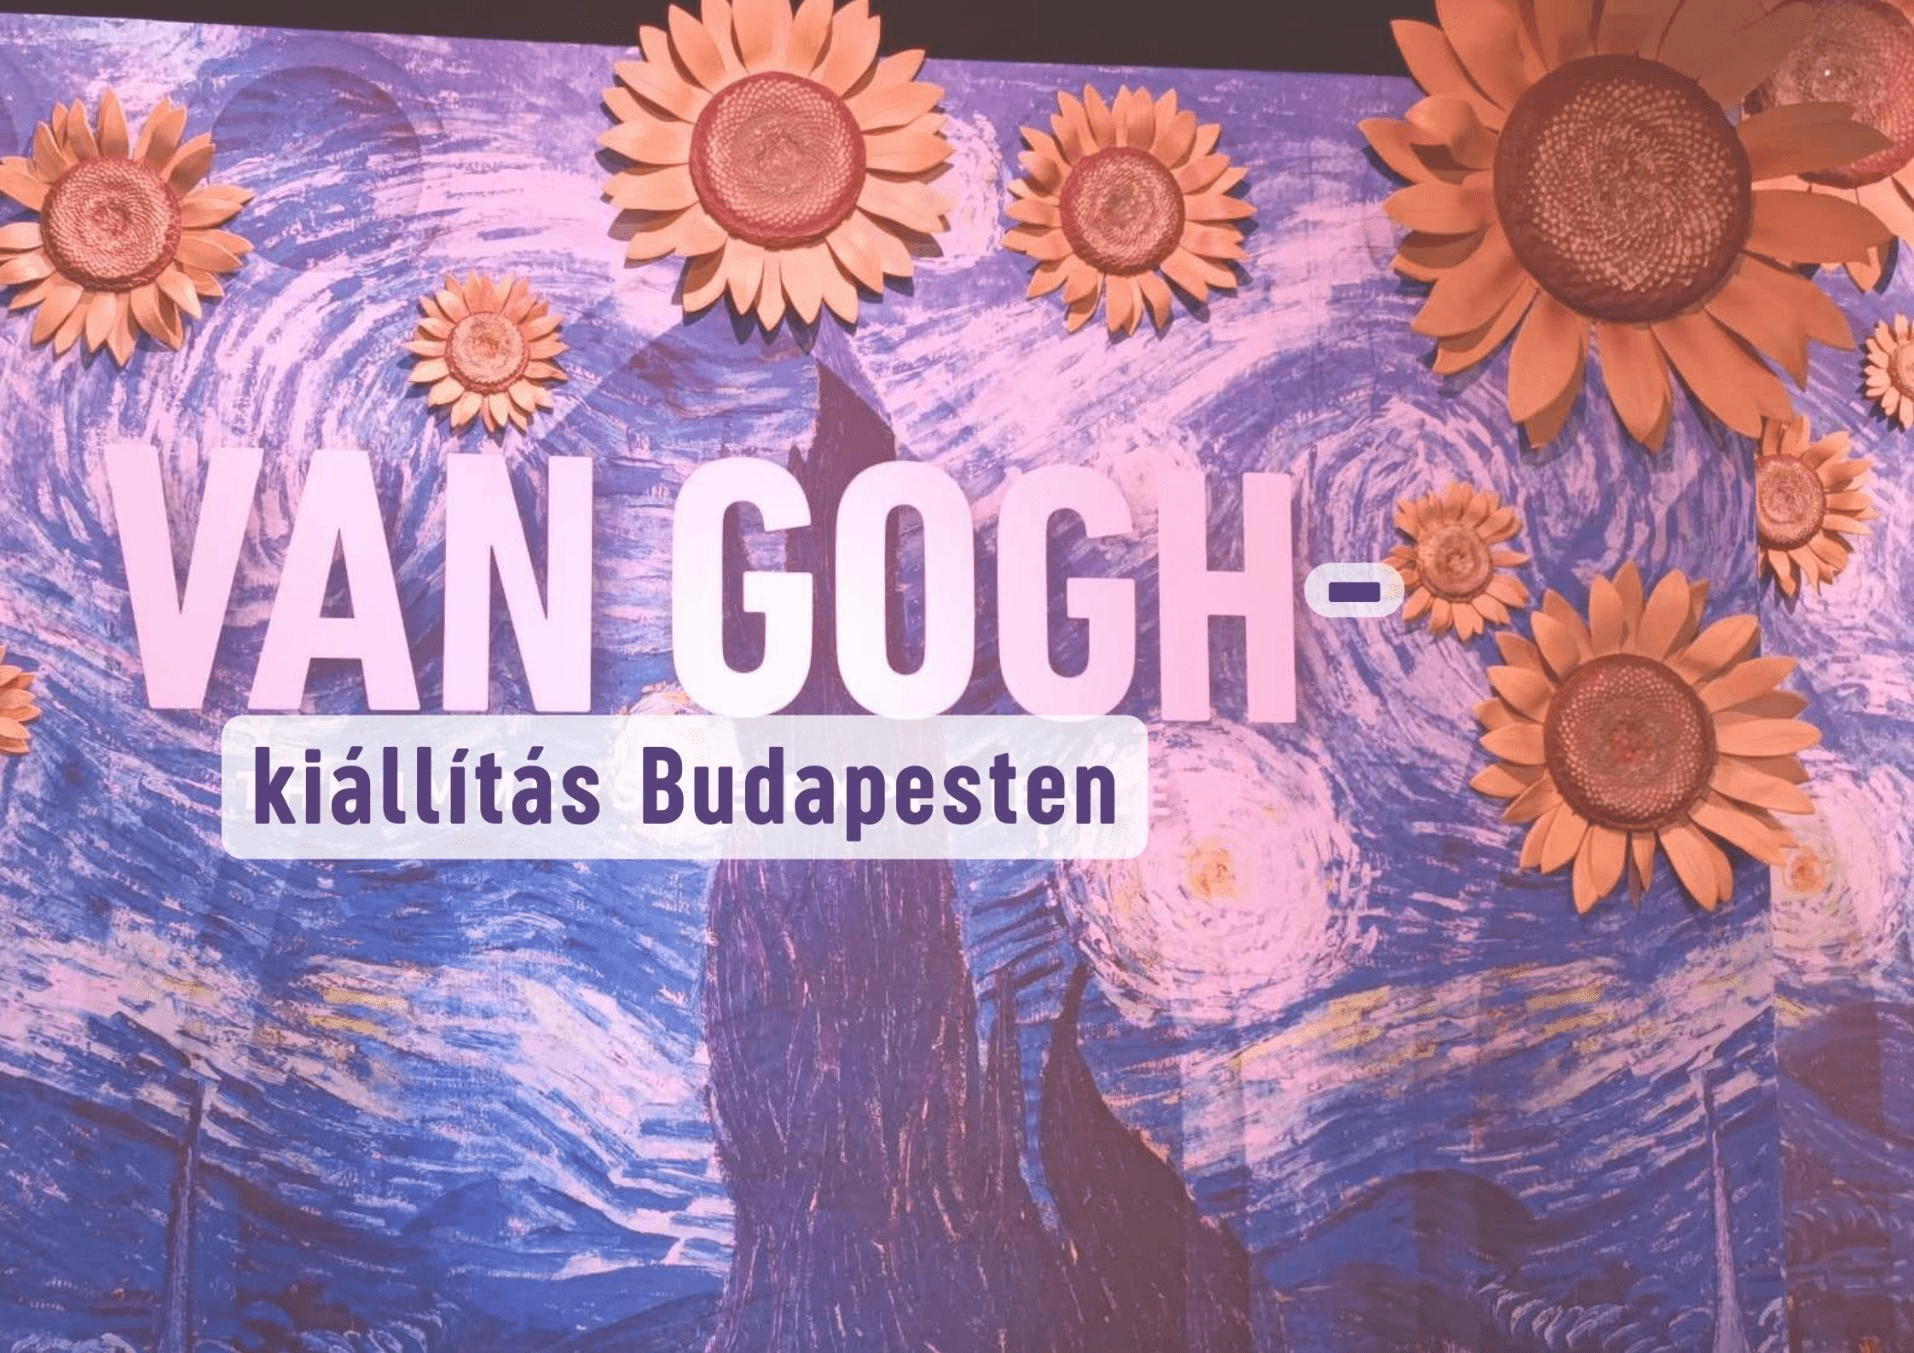 A Van Gogh-kiállításra utazunk Budapestre – hét megye közösen szervezett programja